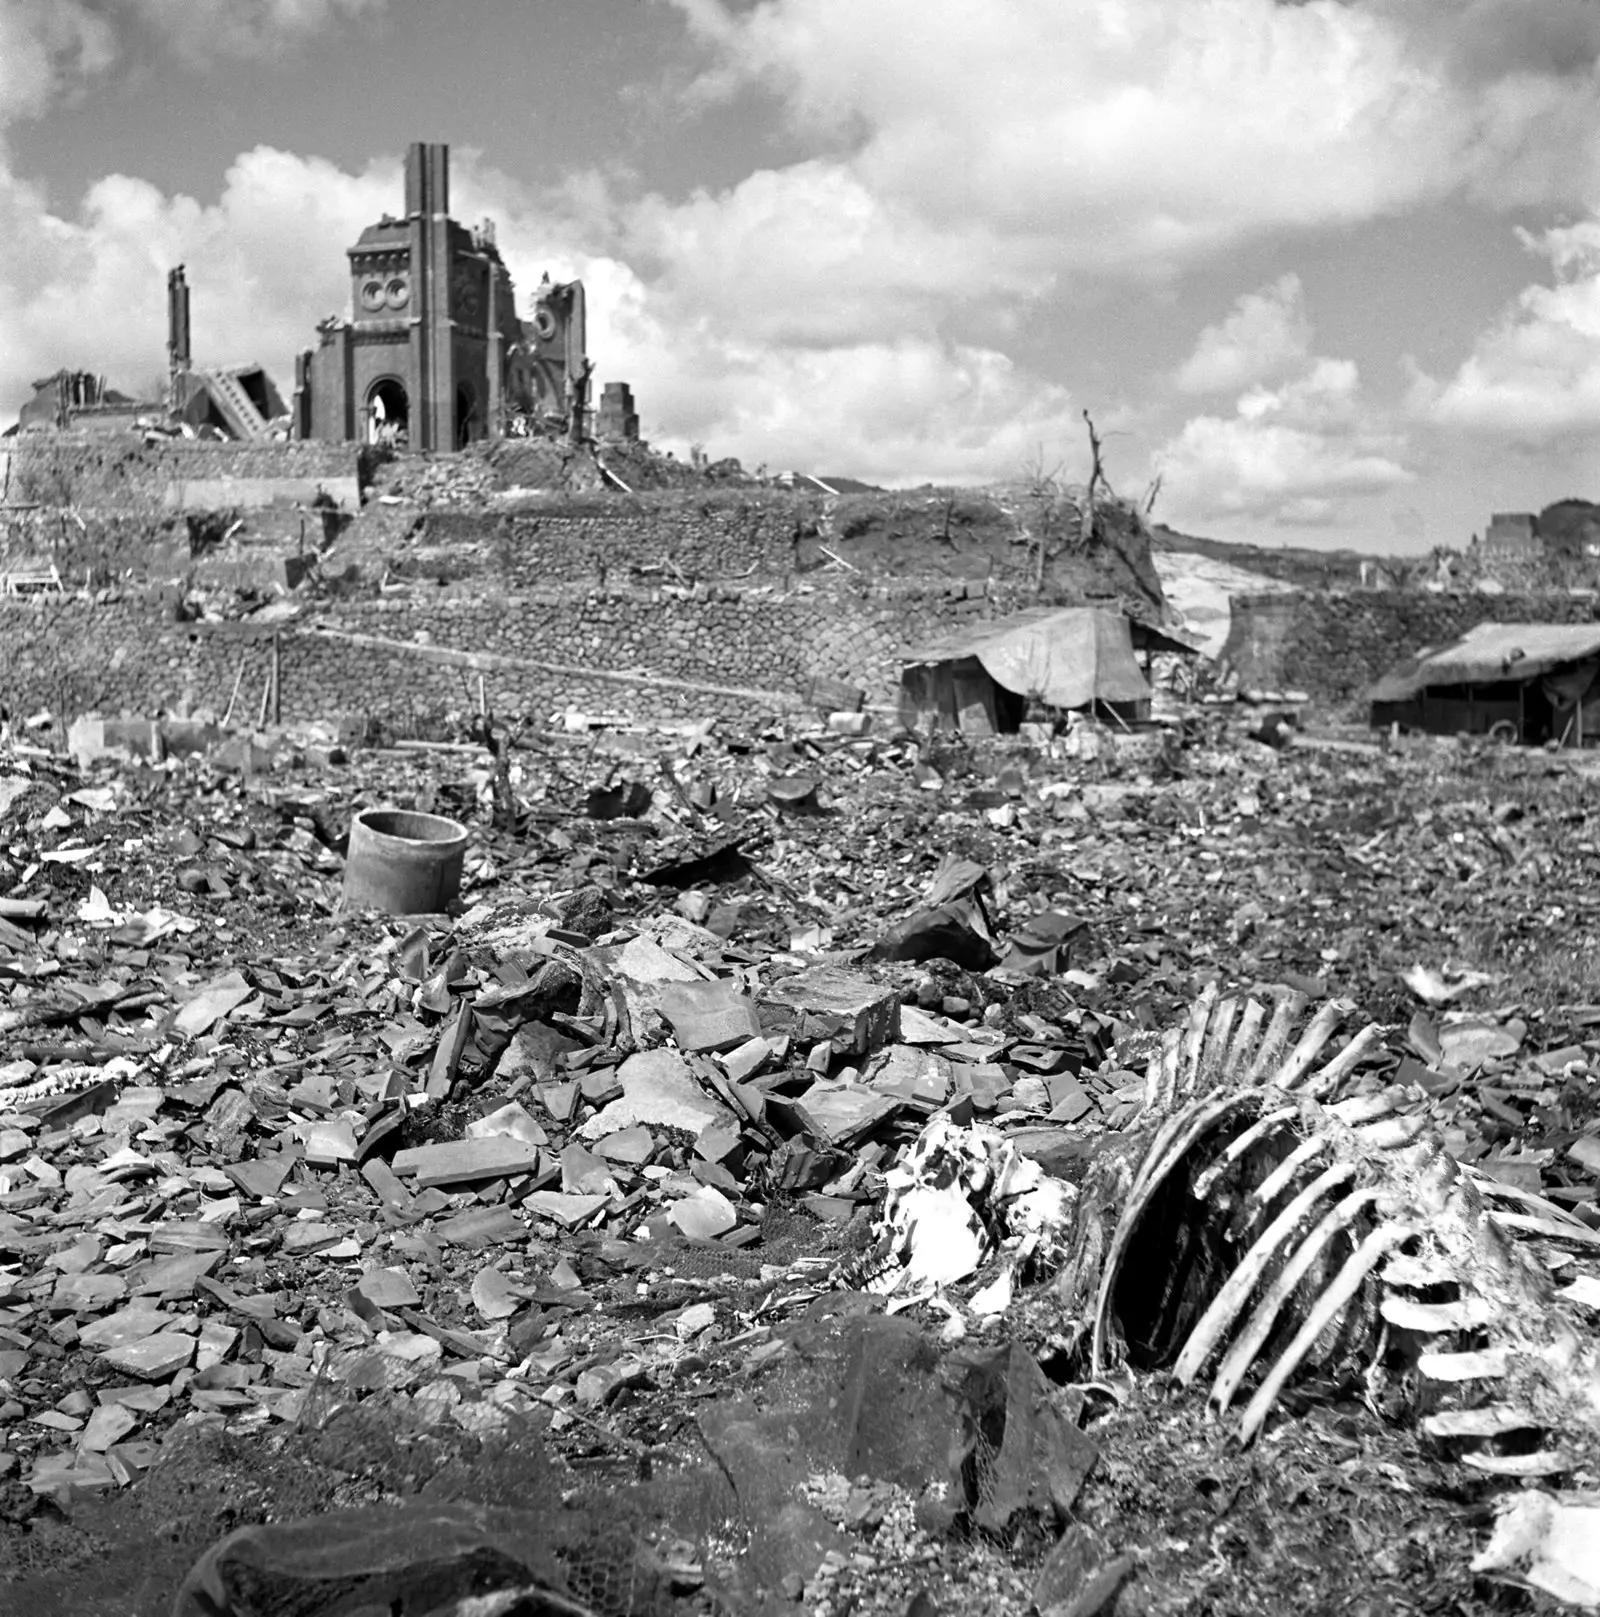 图集系列之广岛长崎原子弹爆炸后悲惨的景象